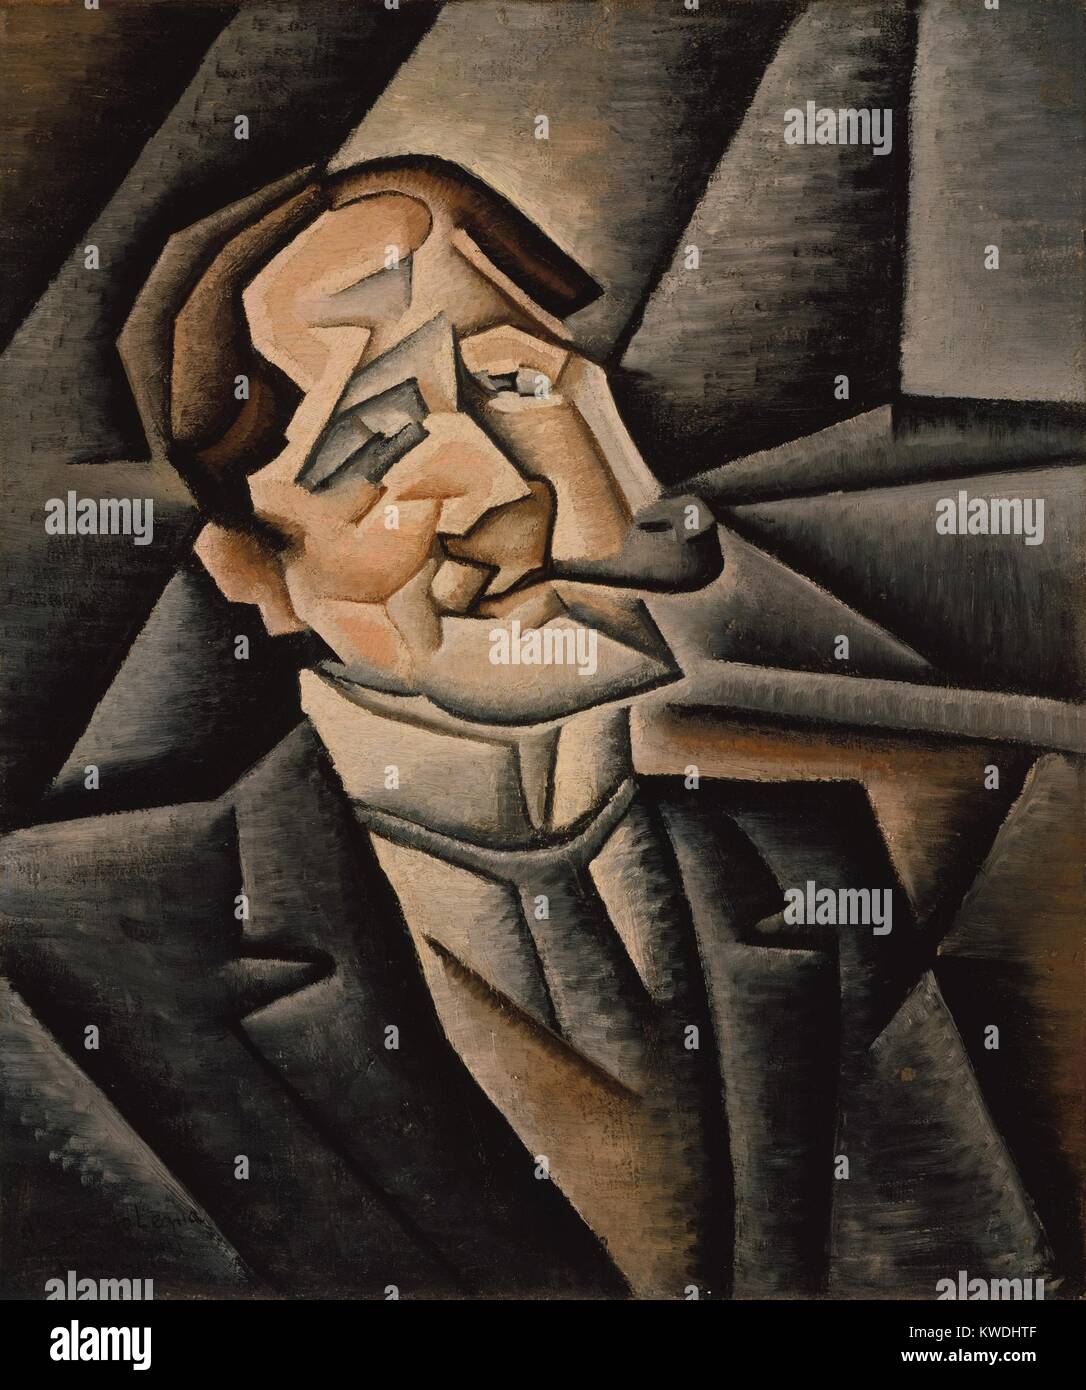 JUAN de los Ángeles, par Juan Gris, 1911, l'espagnol la peinture cubiste, huile sur toile. Portrait cubiste analytique d'un homme fumant une pipe est plus douce et plus représentatives que d'œuvres comparables par le Cubisme de Picasso, fondateurs et George Braque (BSLOC 2017 7 3) Banque D'Images